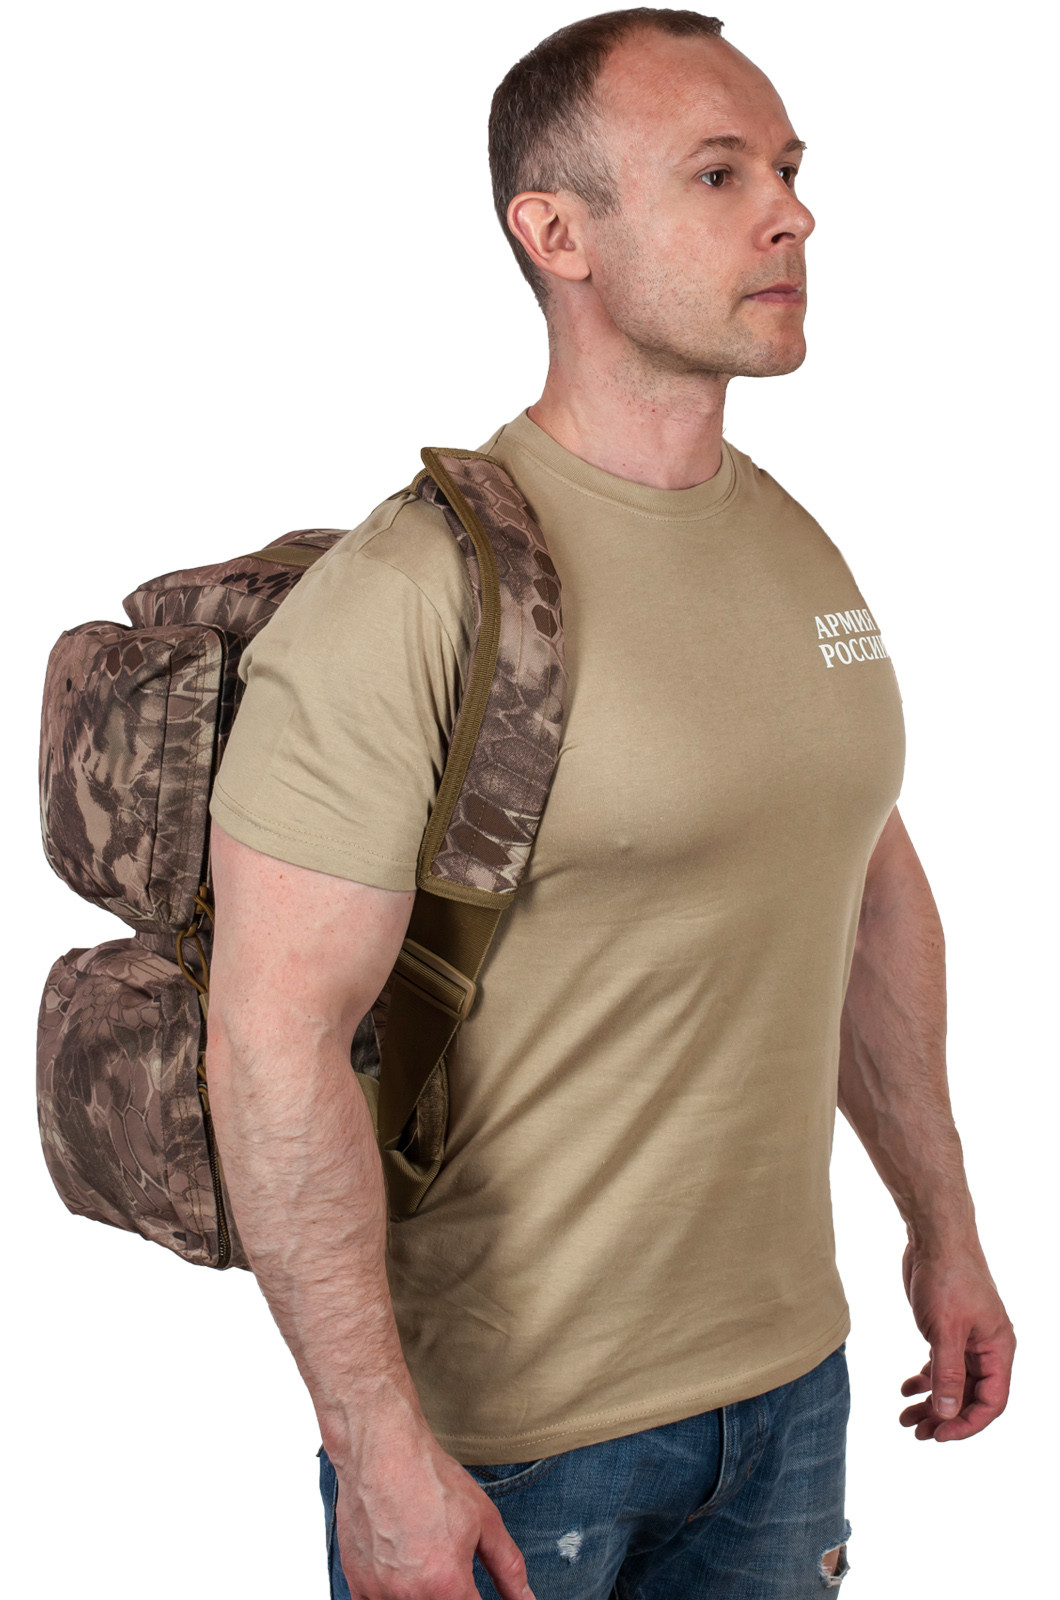 Армейская походная сумка с нашивкой Росгвардия 